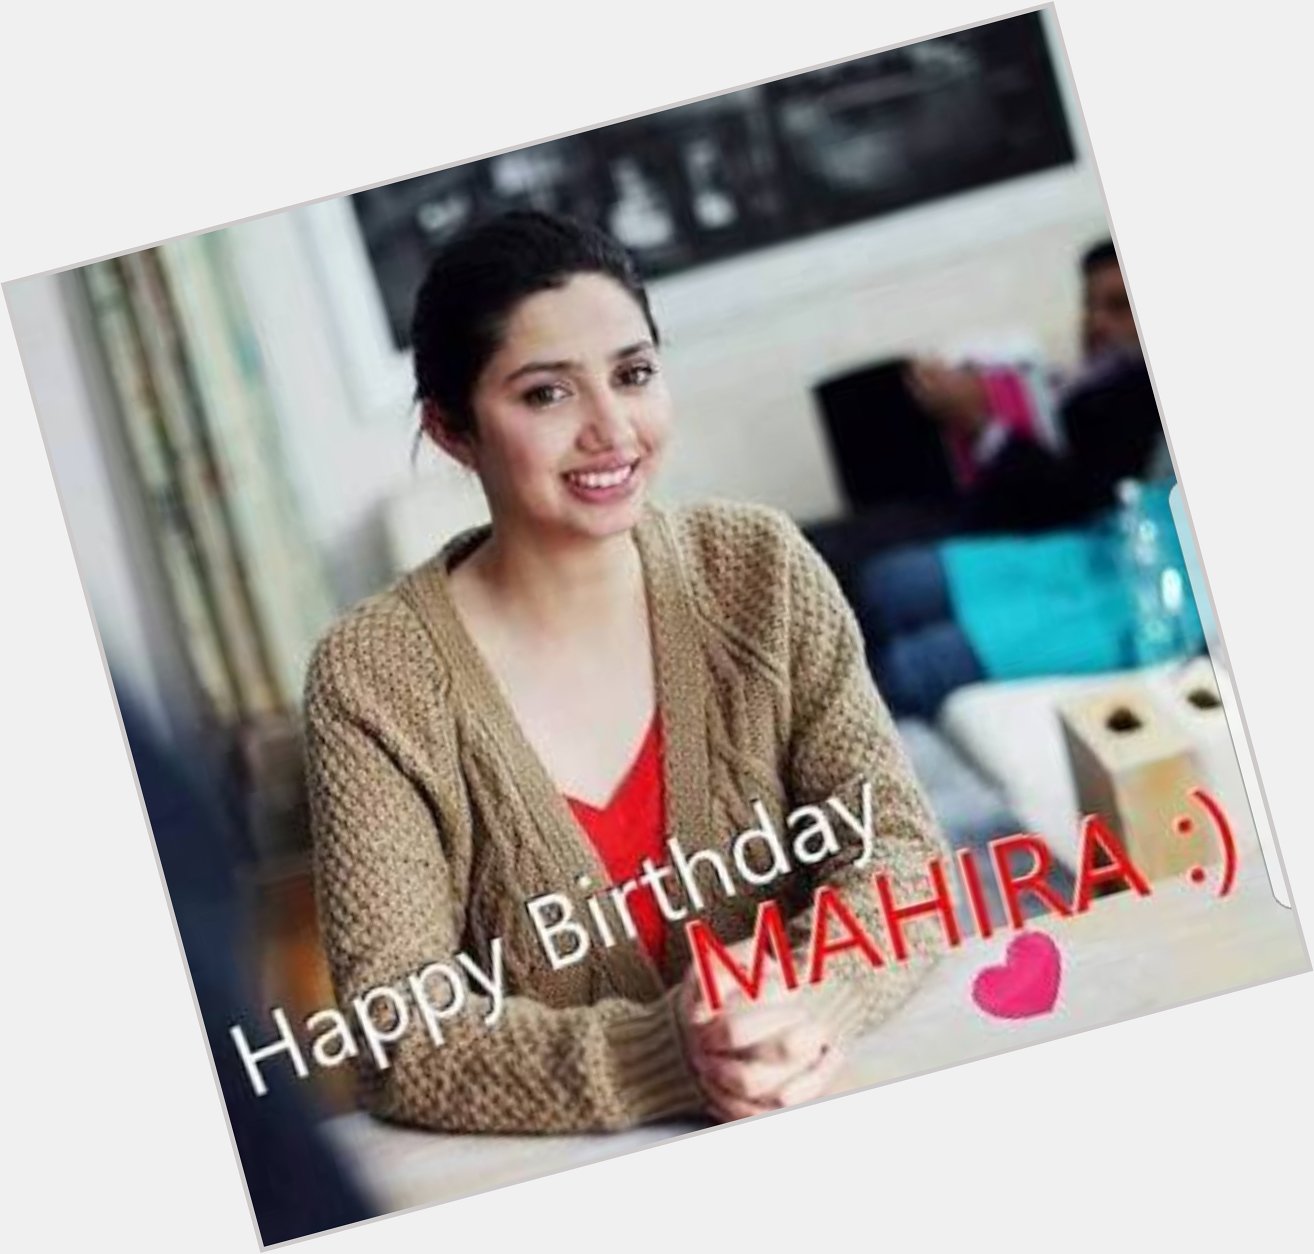 Wishing  a very Happy Birthday to Mahira Khan many many happy returns of the day  